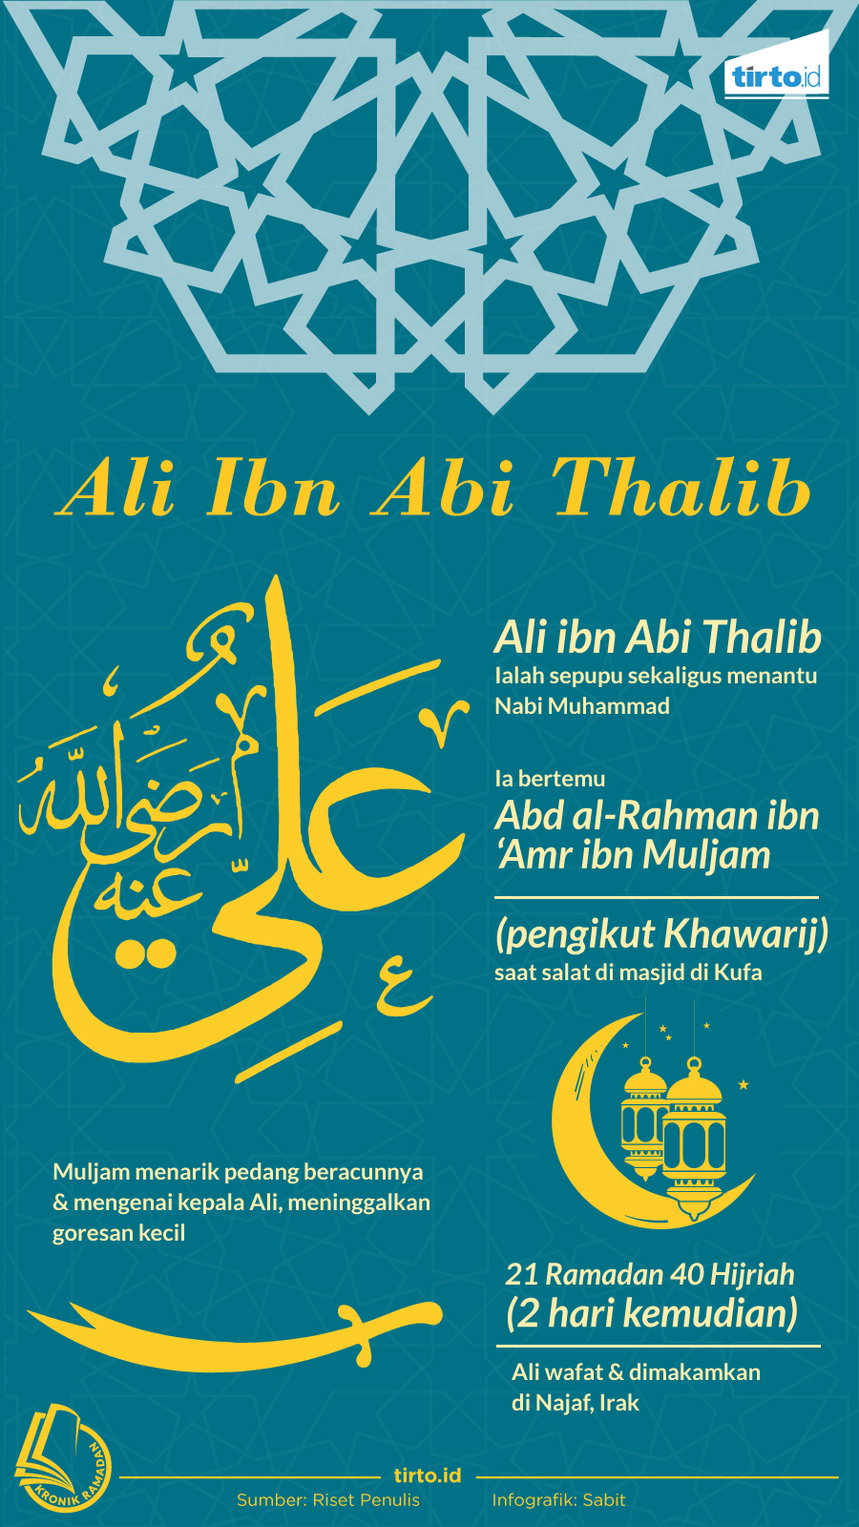 Abu thalib adalah pemimpin dari keluarga